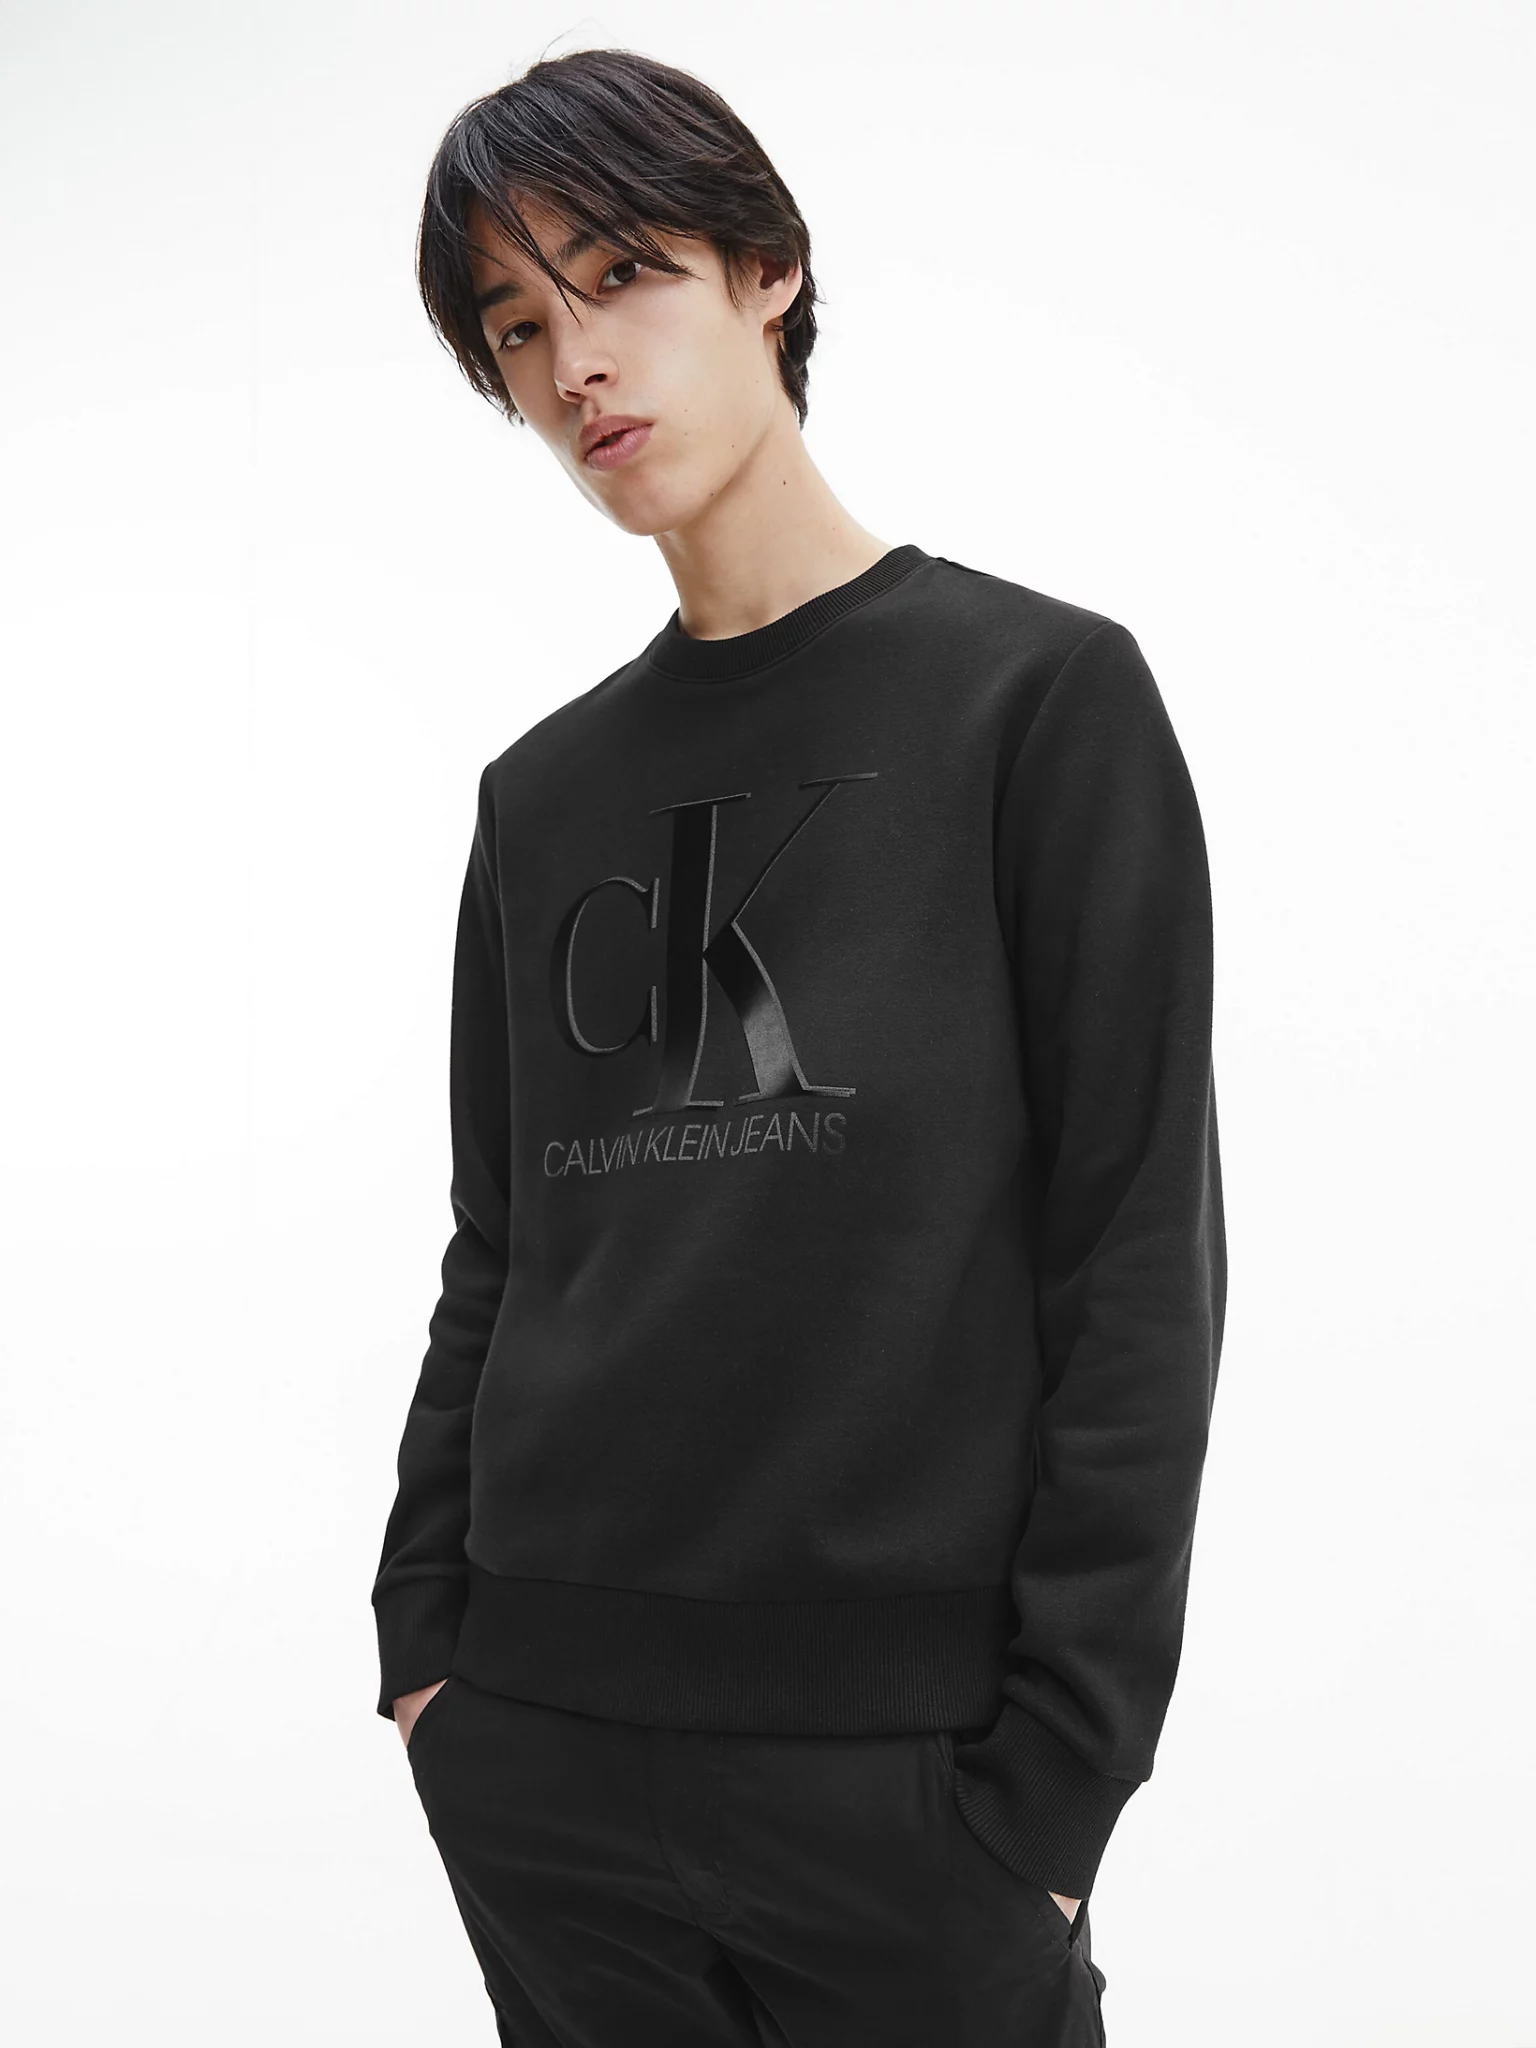 Vertrauen und Qualität an erster Stelle Buy Calvin Klein Leather - Store Fashion Scandinavian Black Sweatshirt Logo Monogram